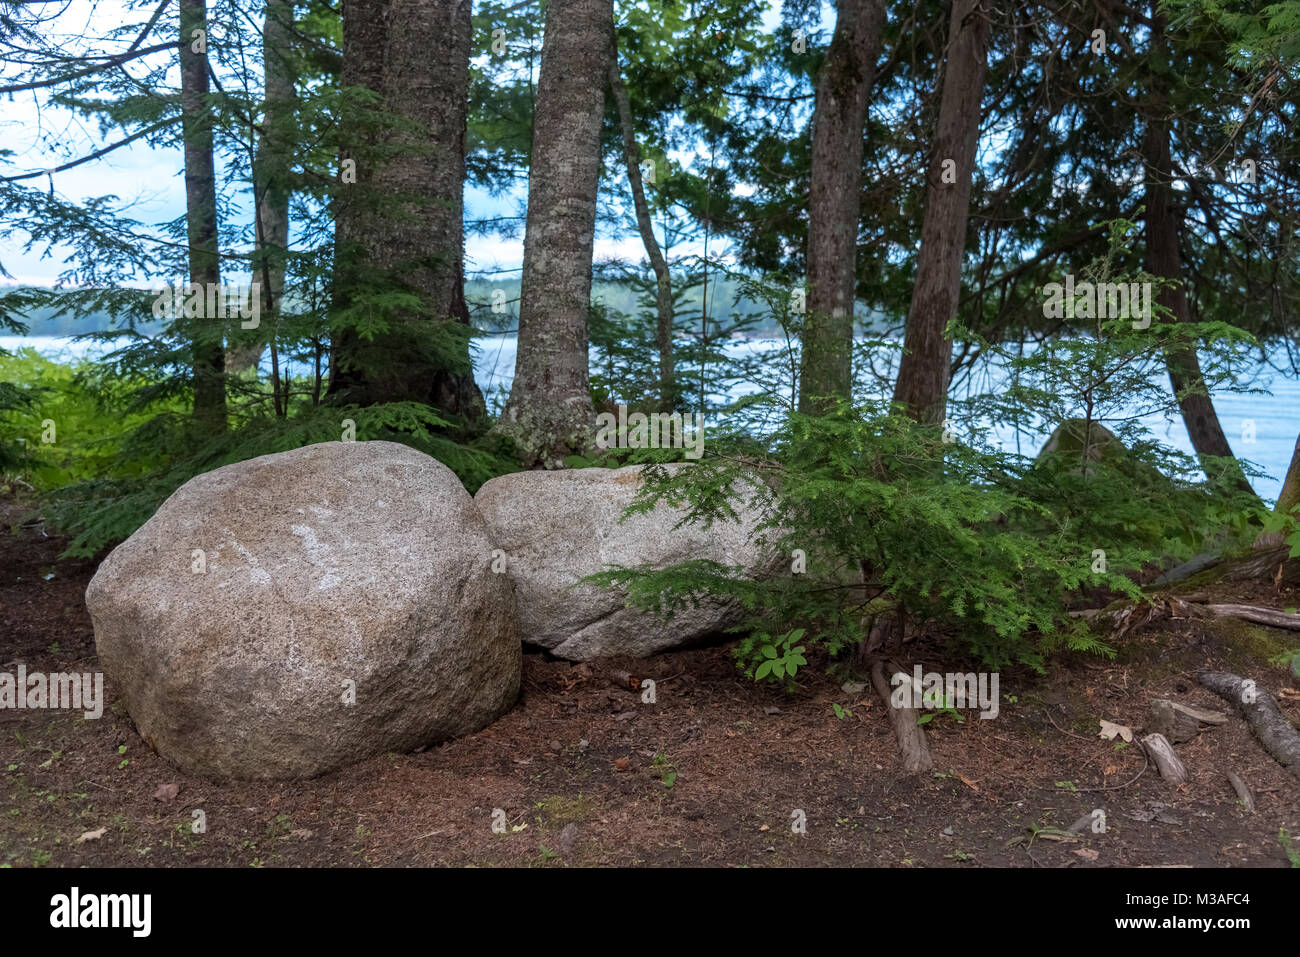 Scène tranquille près de l'eau qui inclut des rochers et une haie d'arbres. Cette photo a été prise à Sebec Lake, dans le Maine, alors que j'étais en vacances. Banque D'Images